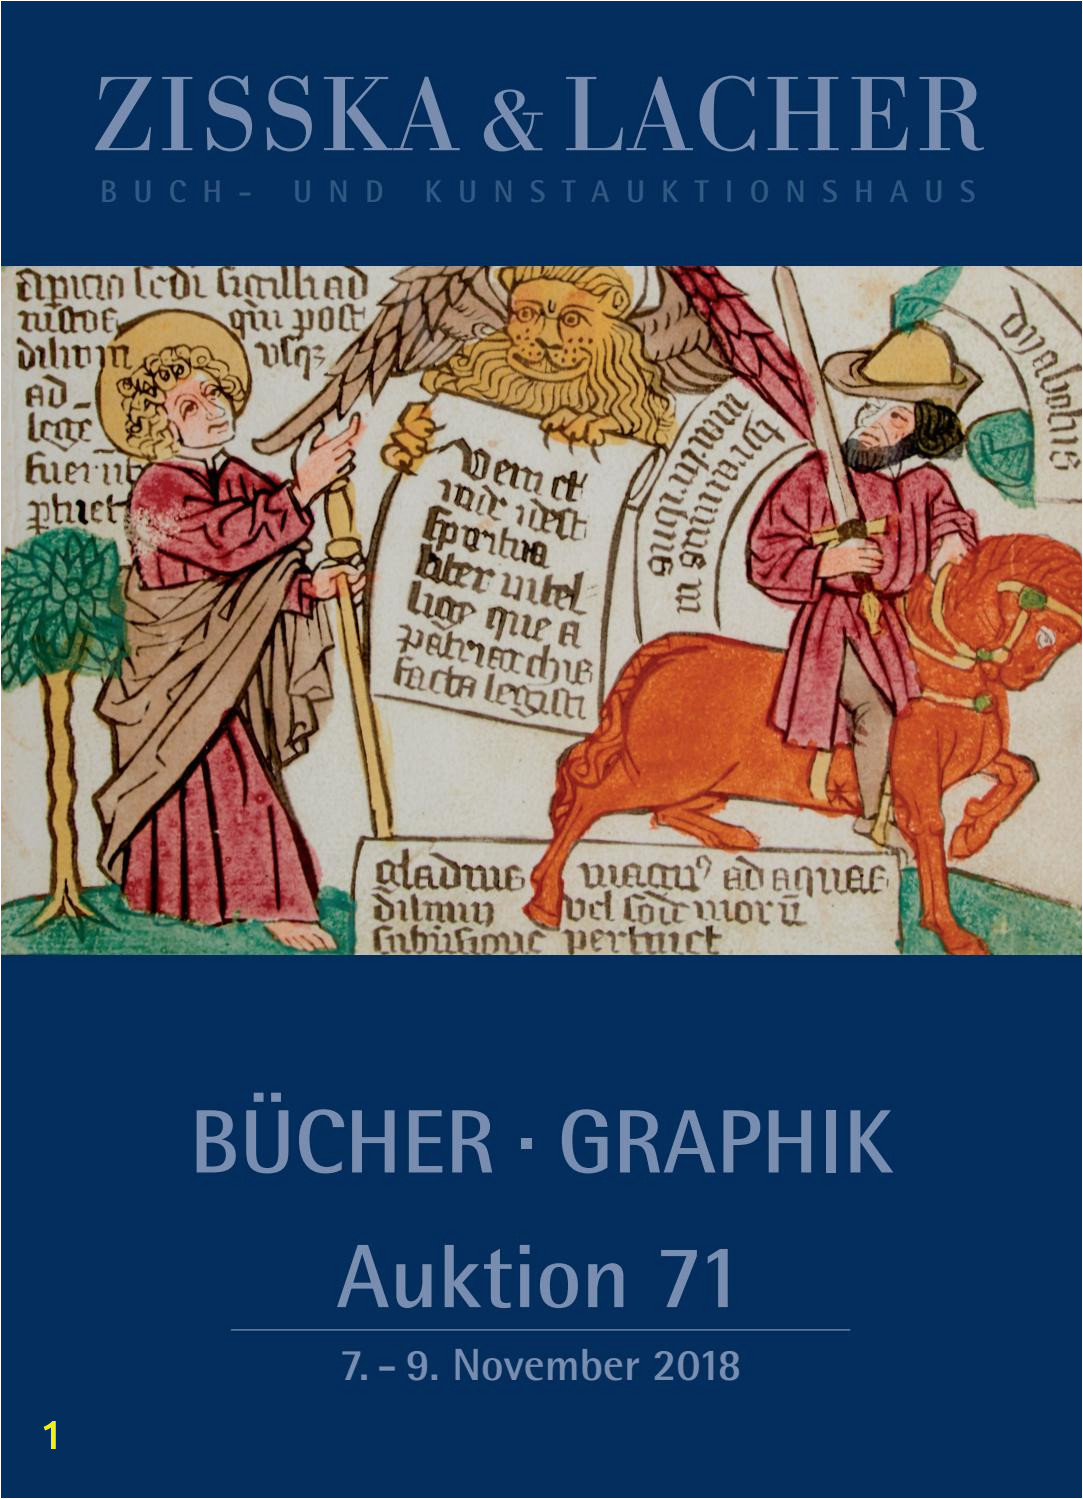 1 Samuel 16 7 Coloring Page Zisska & Lacher Auktion 71 Nov 2018 Teil 1 Auction